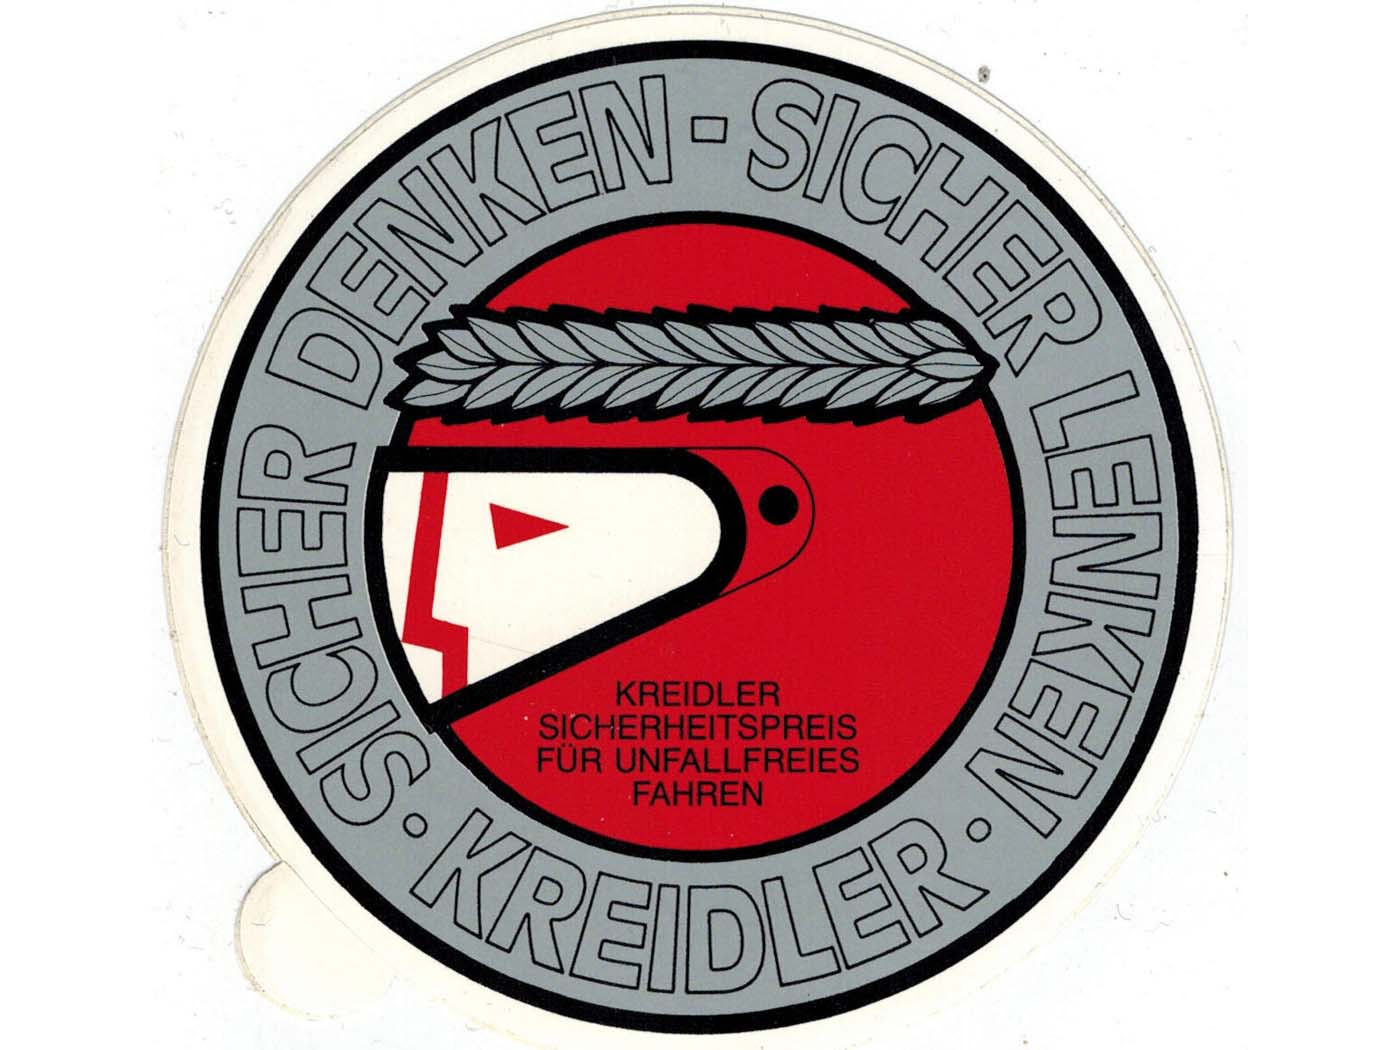 Original Safe Steering Sticker